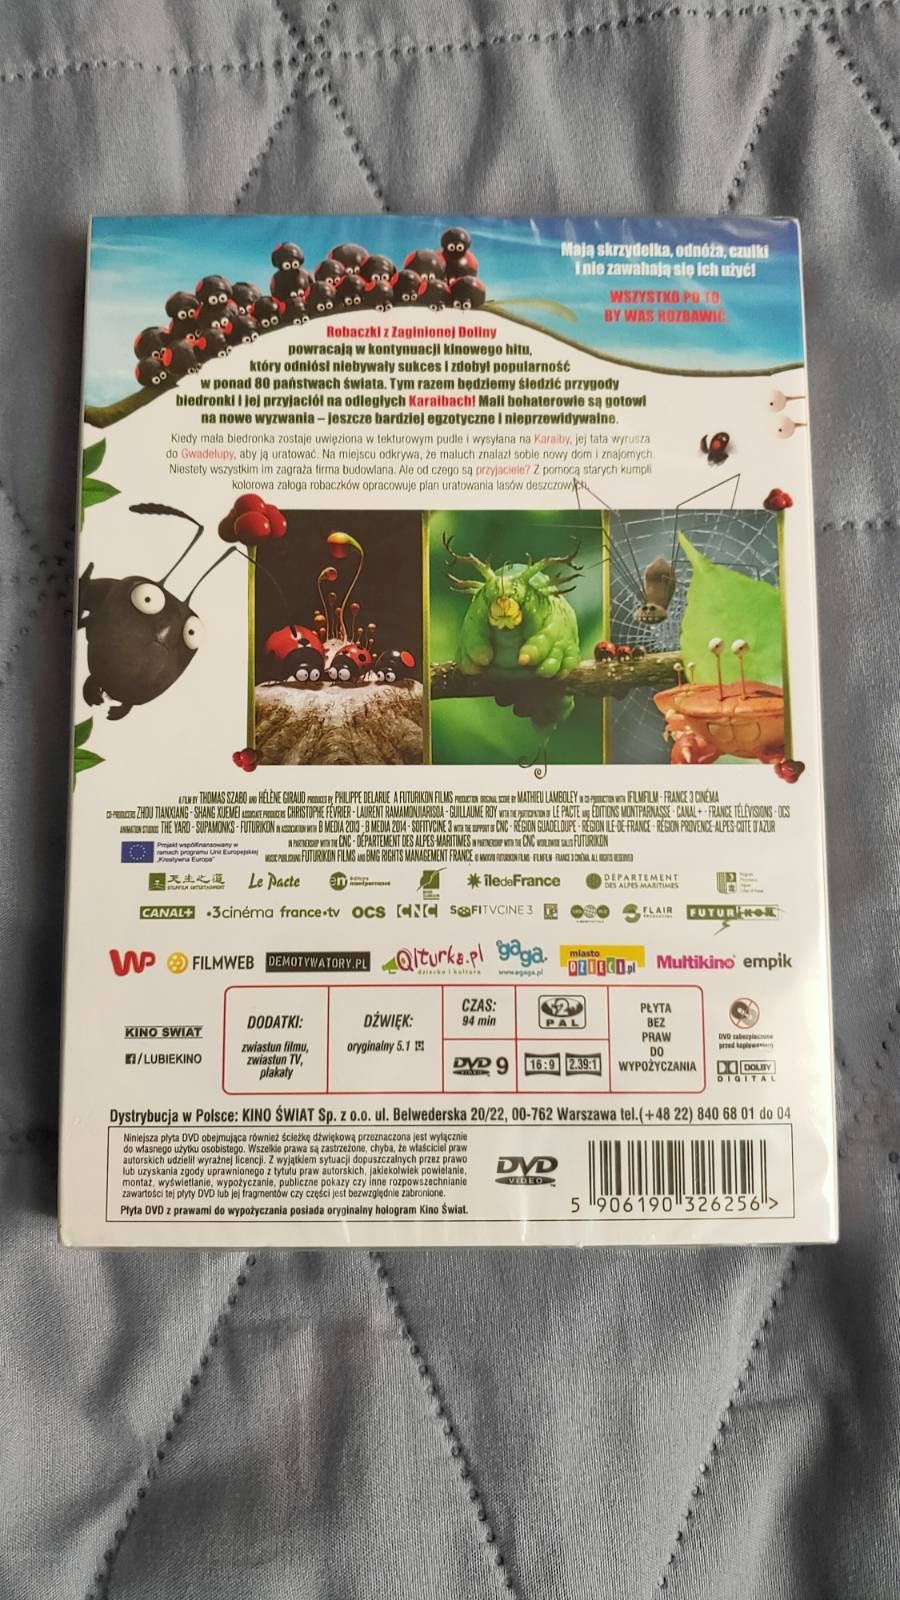 Bajka DVD Robaczki z zaginionej dżungli NOWA w folii